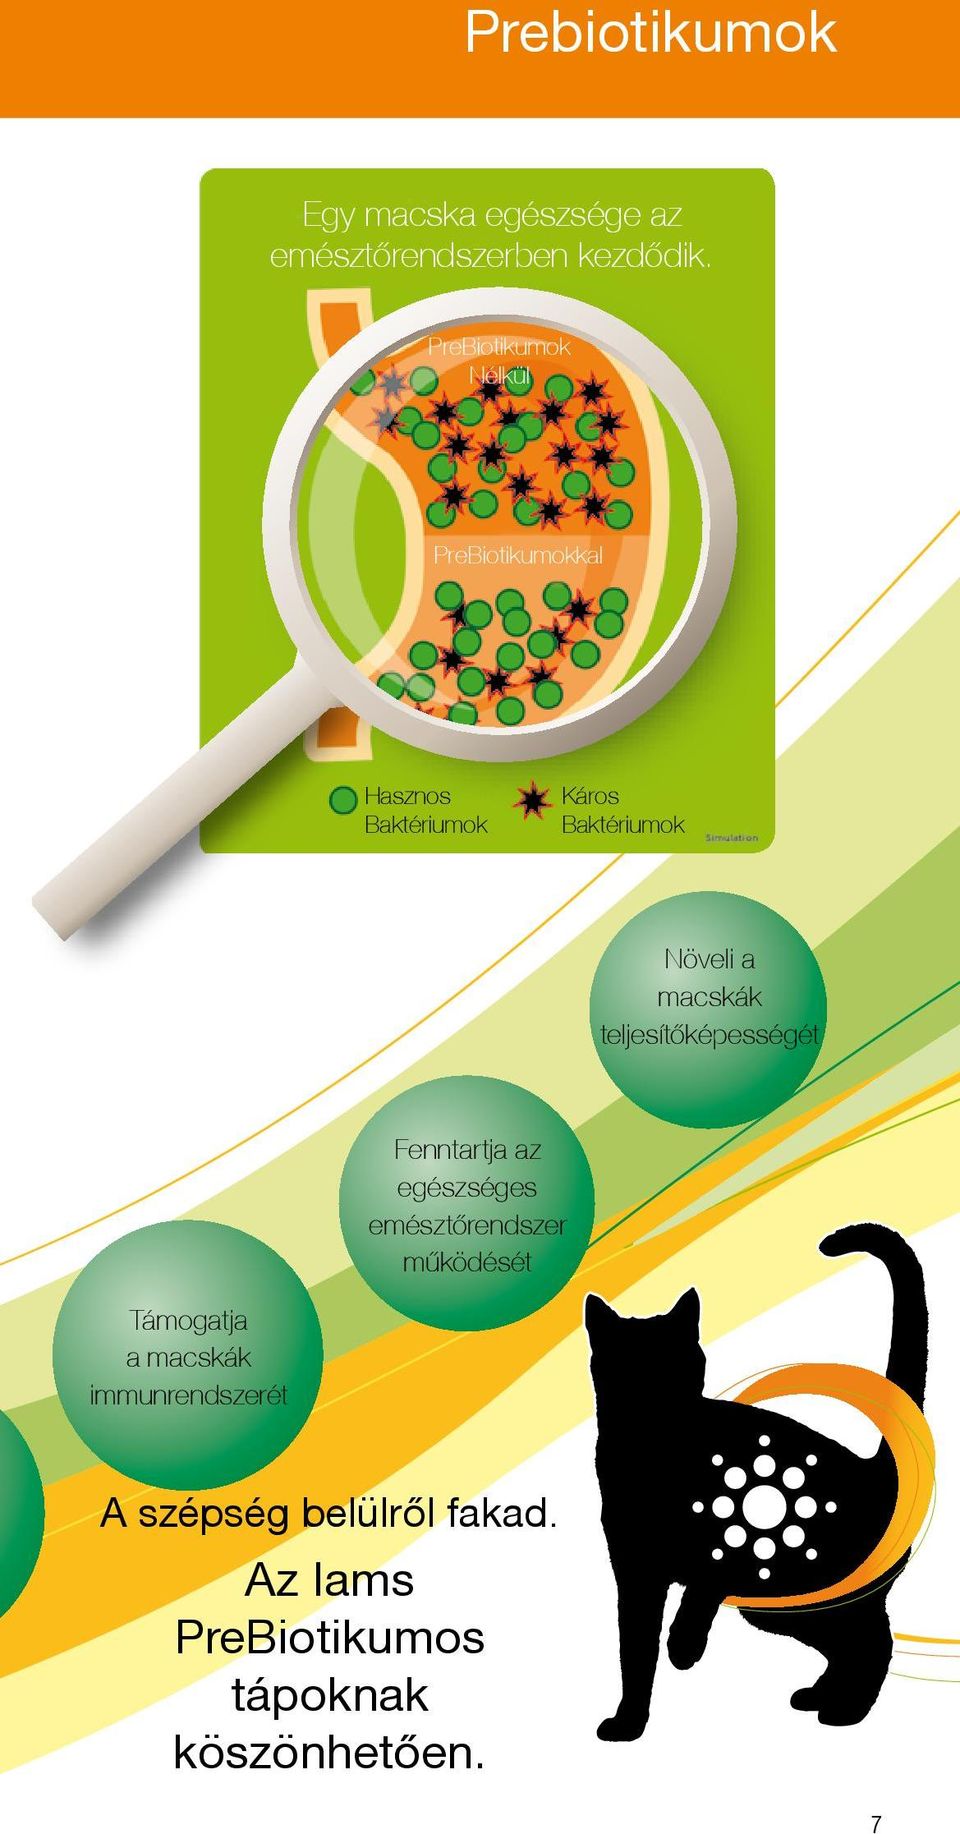 PreBiotikumok Nélkül PreBiotikumokkal Hasznos Baktériumok Káros Baktériumok Növeli a macskák